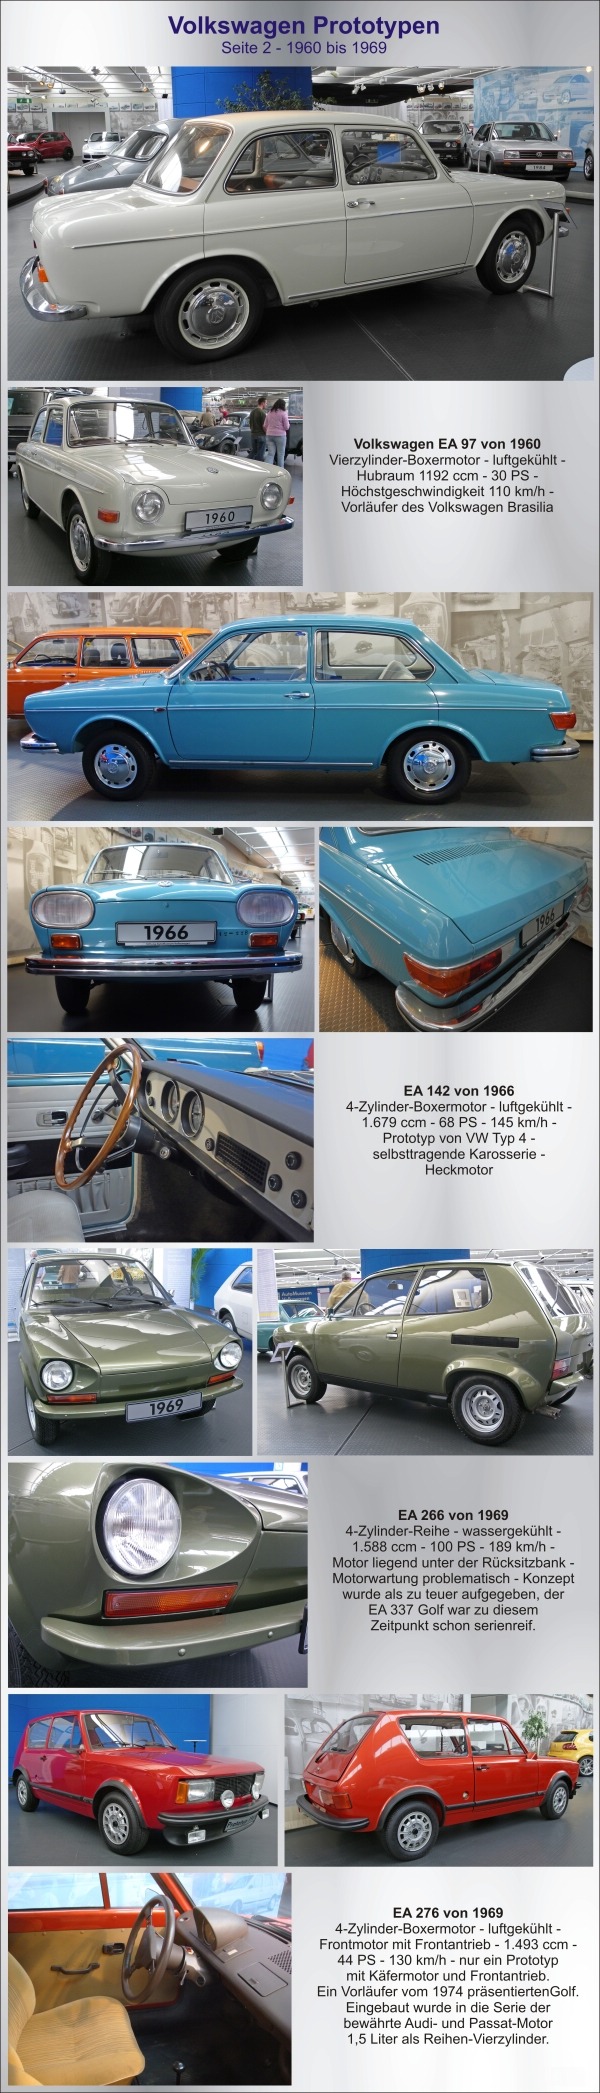 VW Prototypen - Seite 2 - 1960-1969